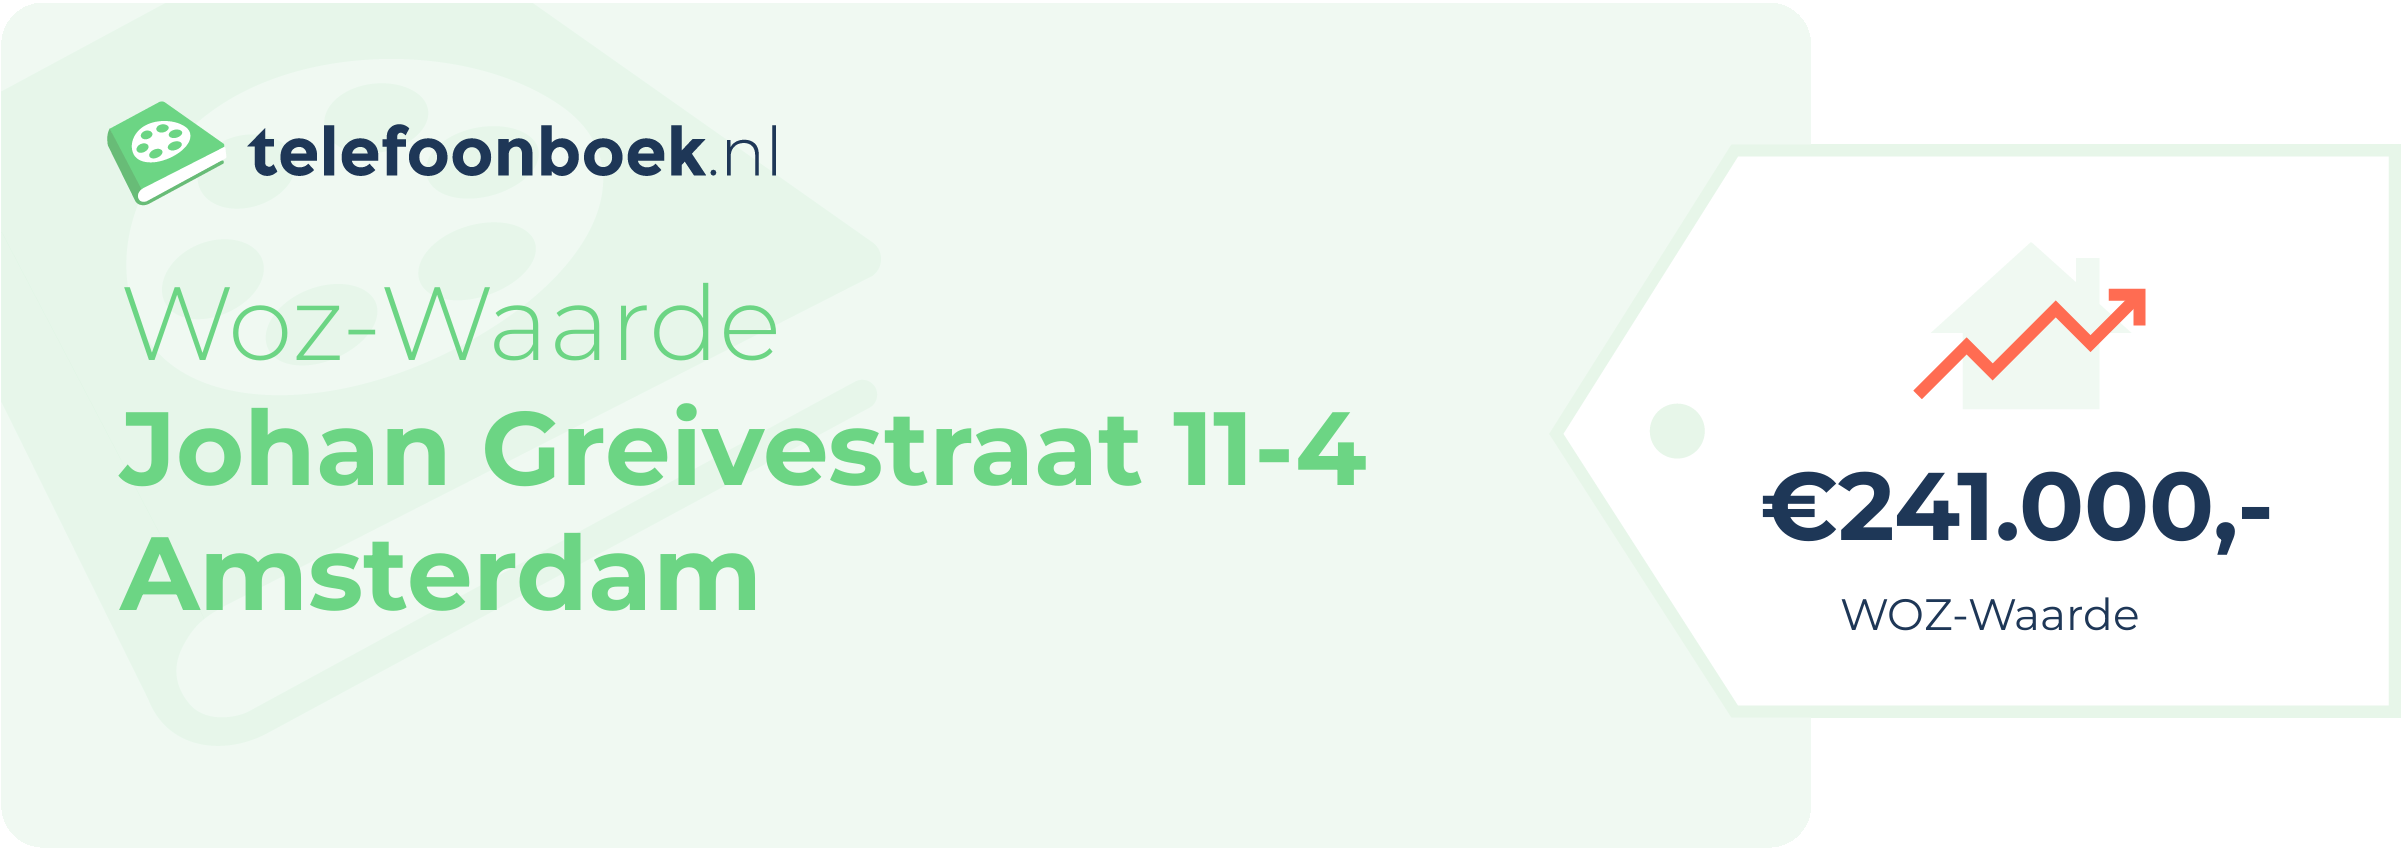 WOZ-waarde Johan Greivestraat 11-4 Amsterdam